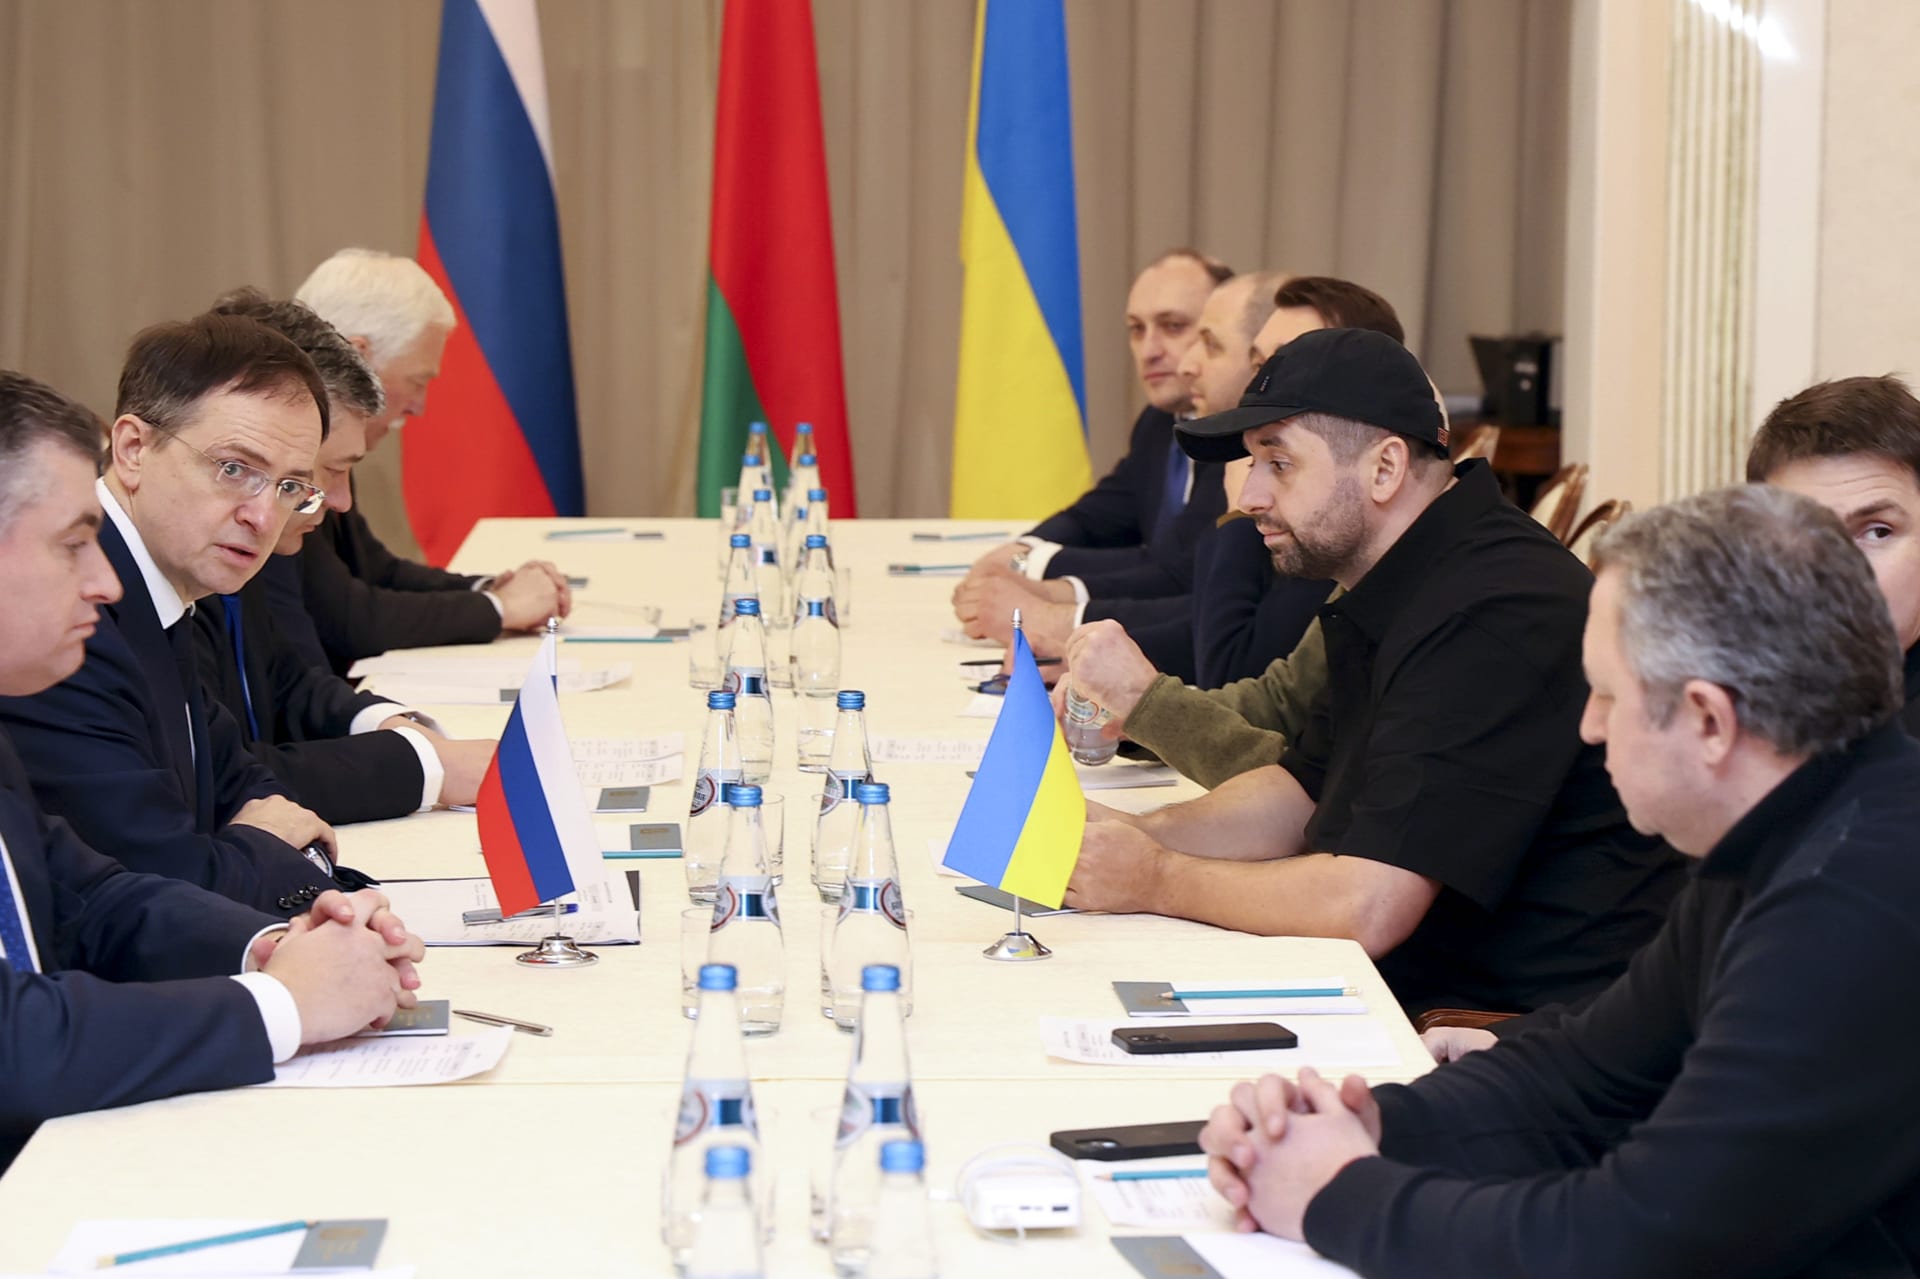 Druhý zleva Vladimir Medinskij, šéf ruské delegace, třetí zleva Davyd Arachamija, hlava ukrajinské delegace. 28. února 2022 se uskutečnilo první mírové jednání mezi Ukrajinou a Ruskem.